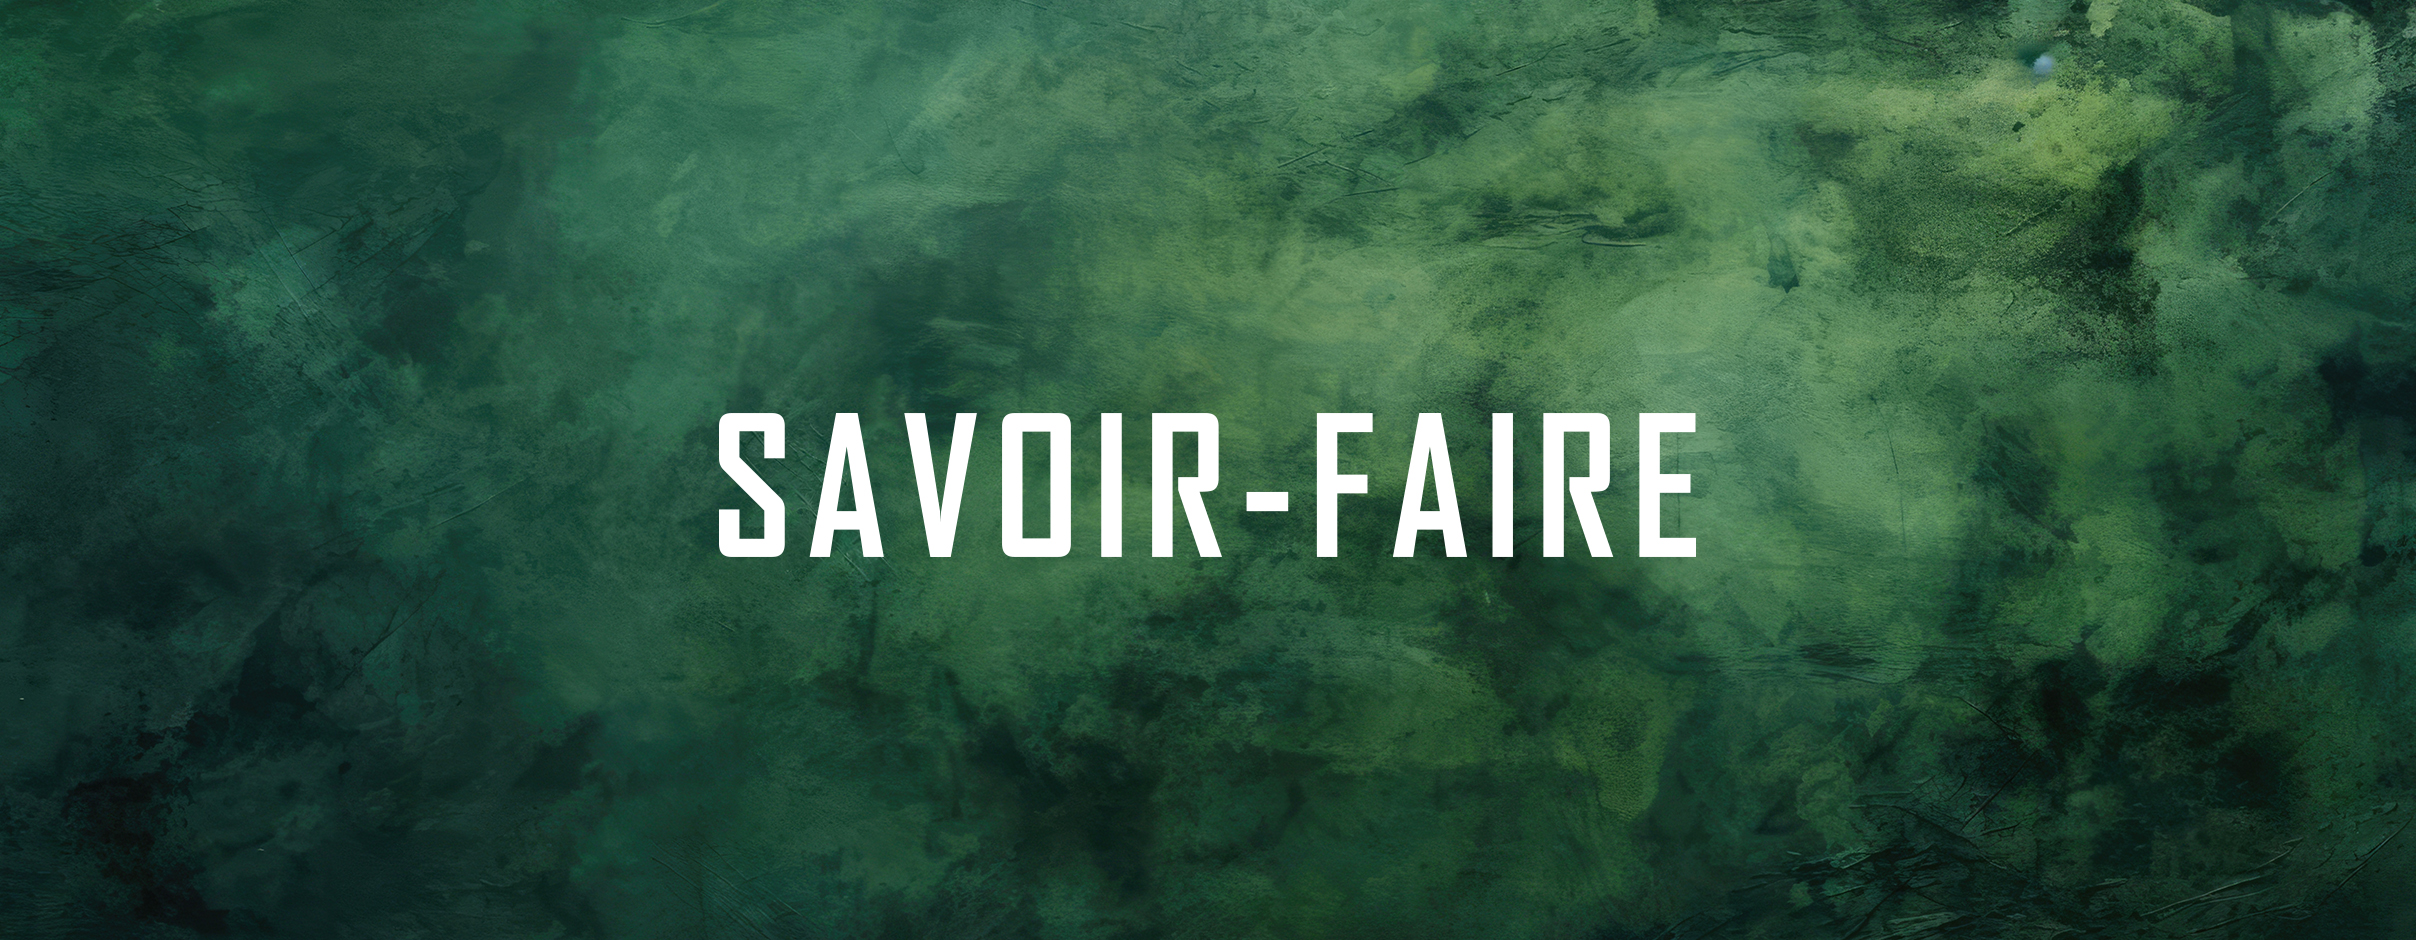 Savor-Faire sign on a dark green background